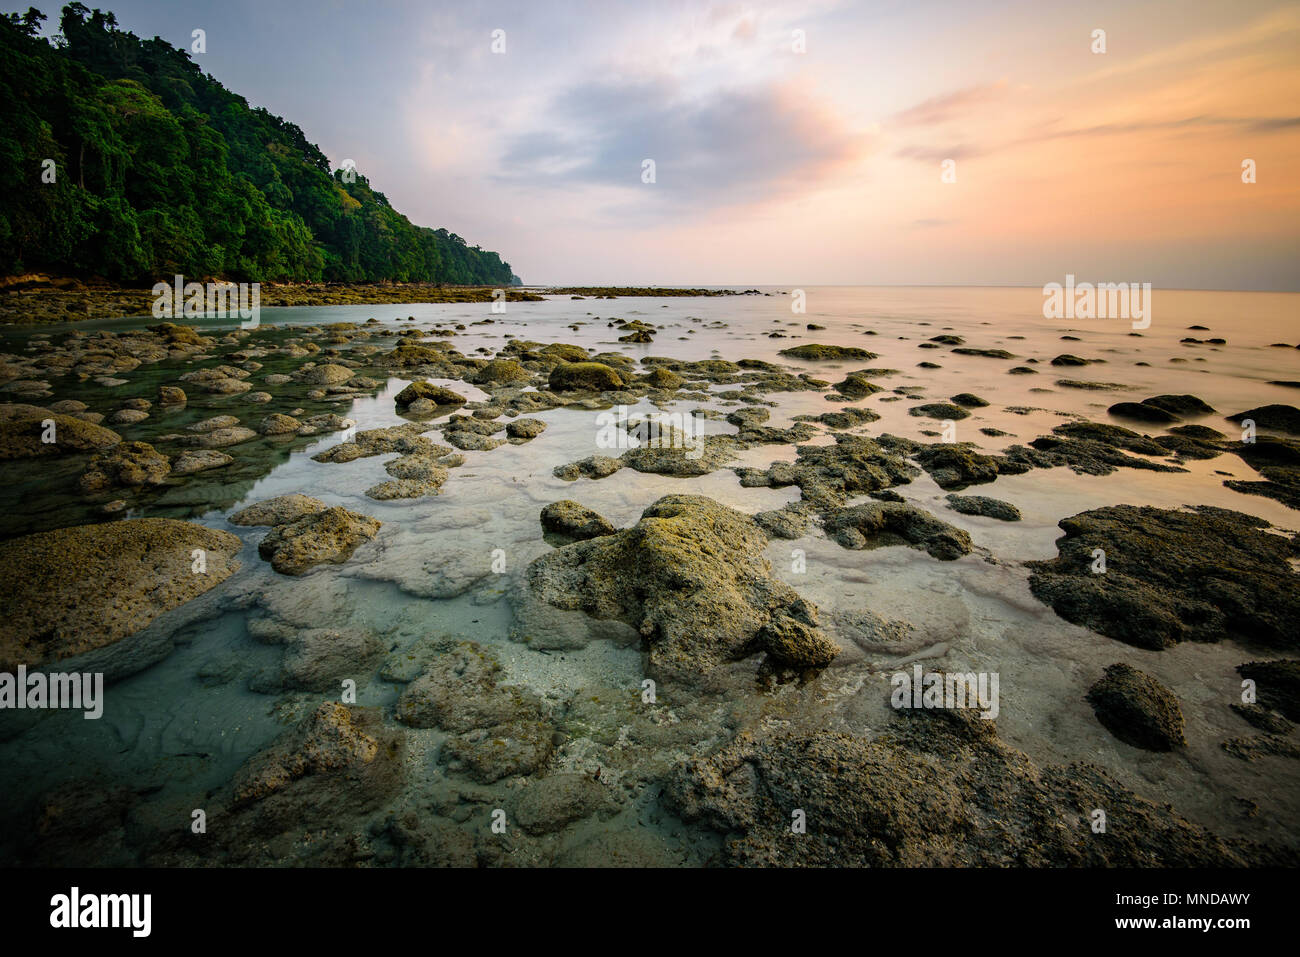 Parsemées autour de roches dans les eaux peu profondes à Radhanagar beach à Havelock island dans les îles Andaman et Nicobar, archipel de l'Inde. Banque D'Images